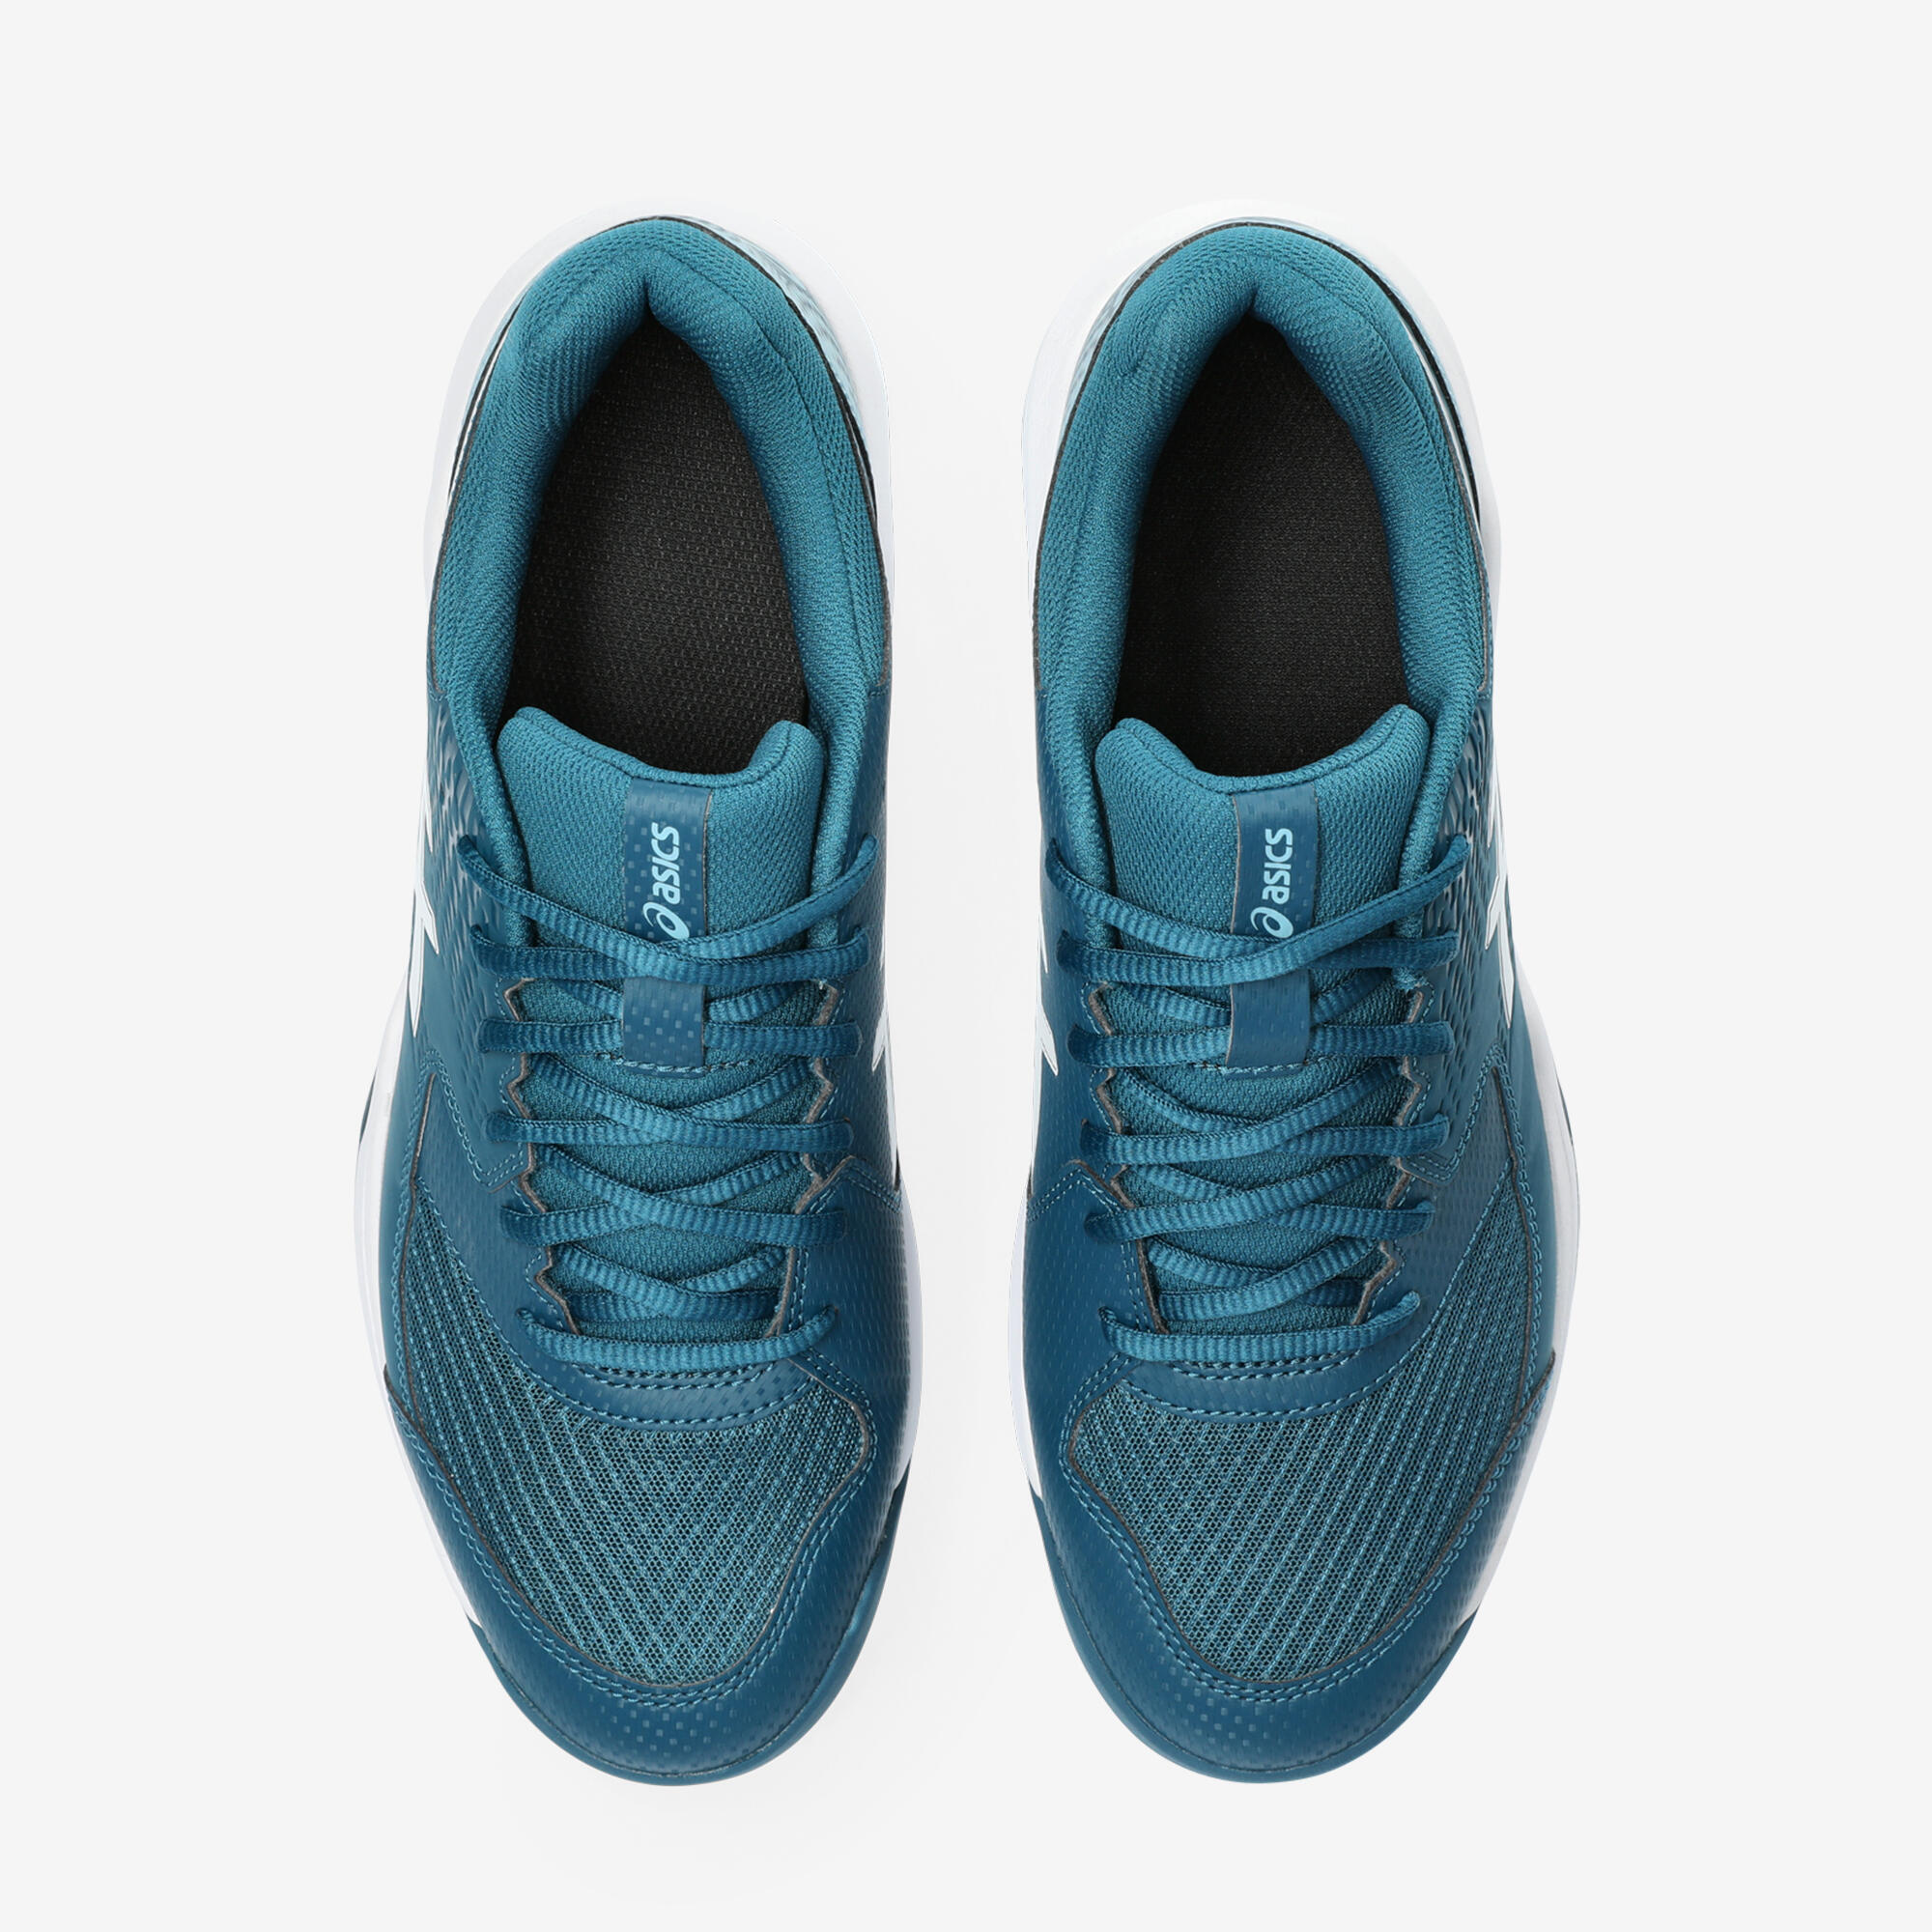 Men's Carpet Court Tennis Shoes Gel Dedicate 8 - Blue 5/5